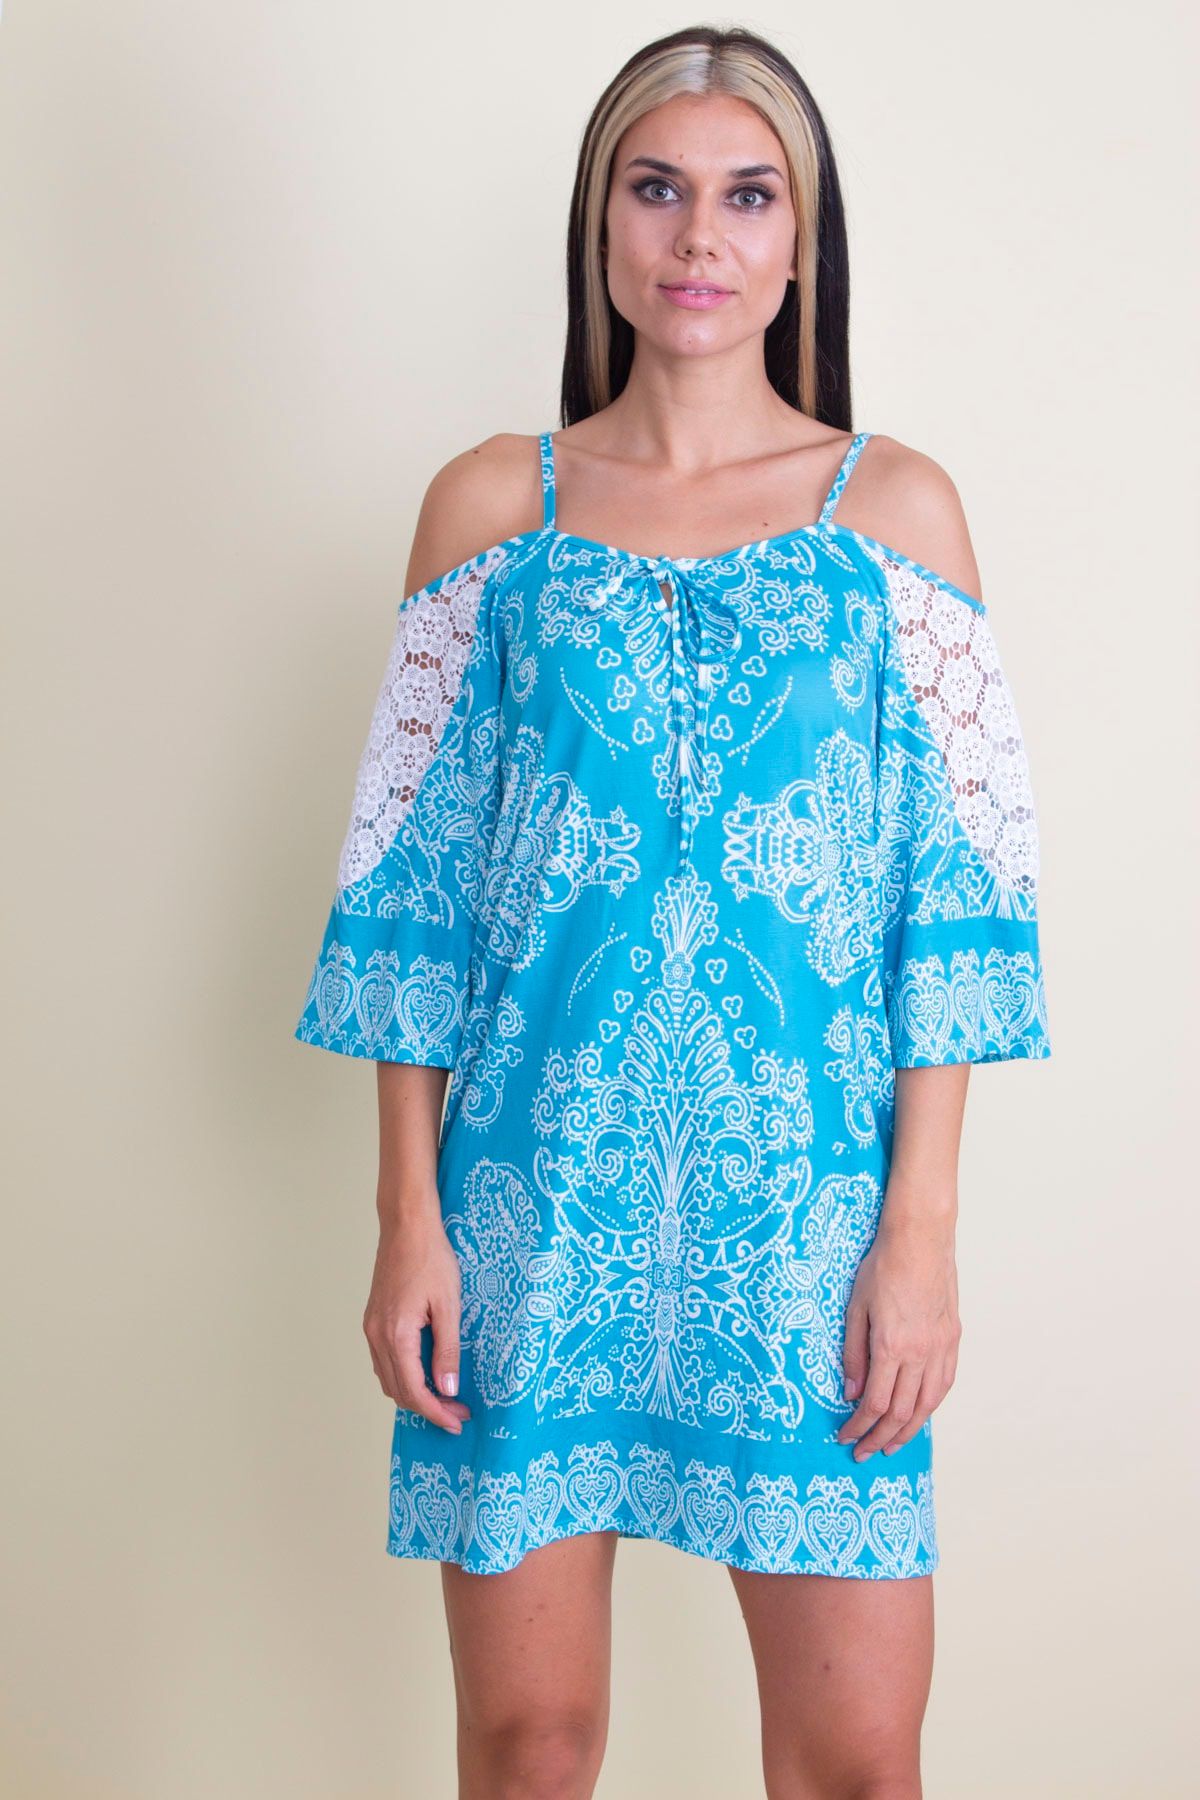 Şans Tekstil Kadınturkuaz Dantel Detaylı Elbise 85n5421